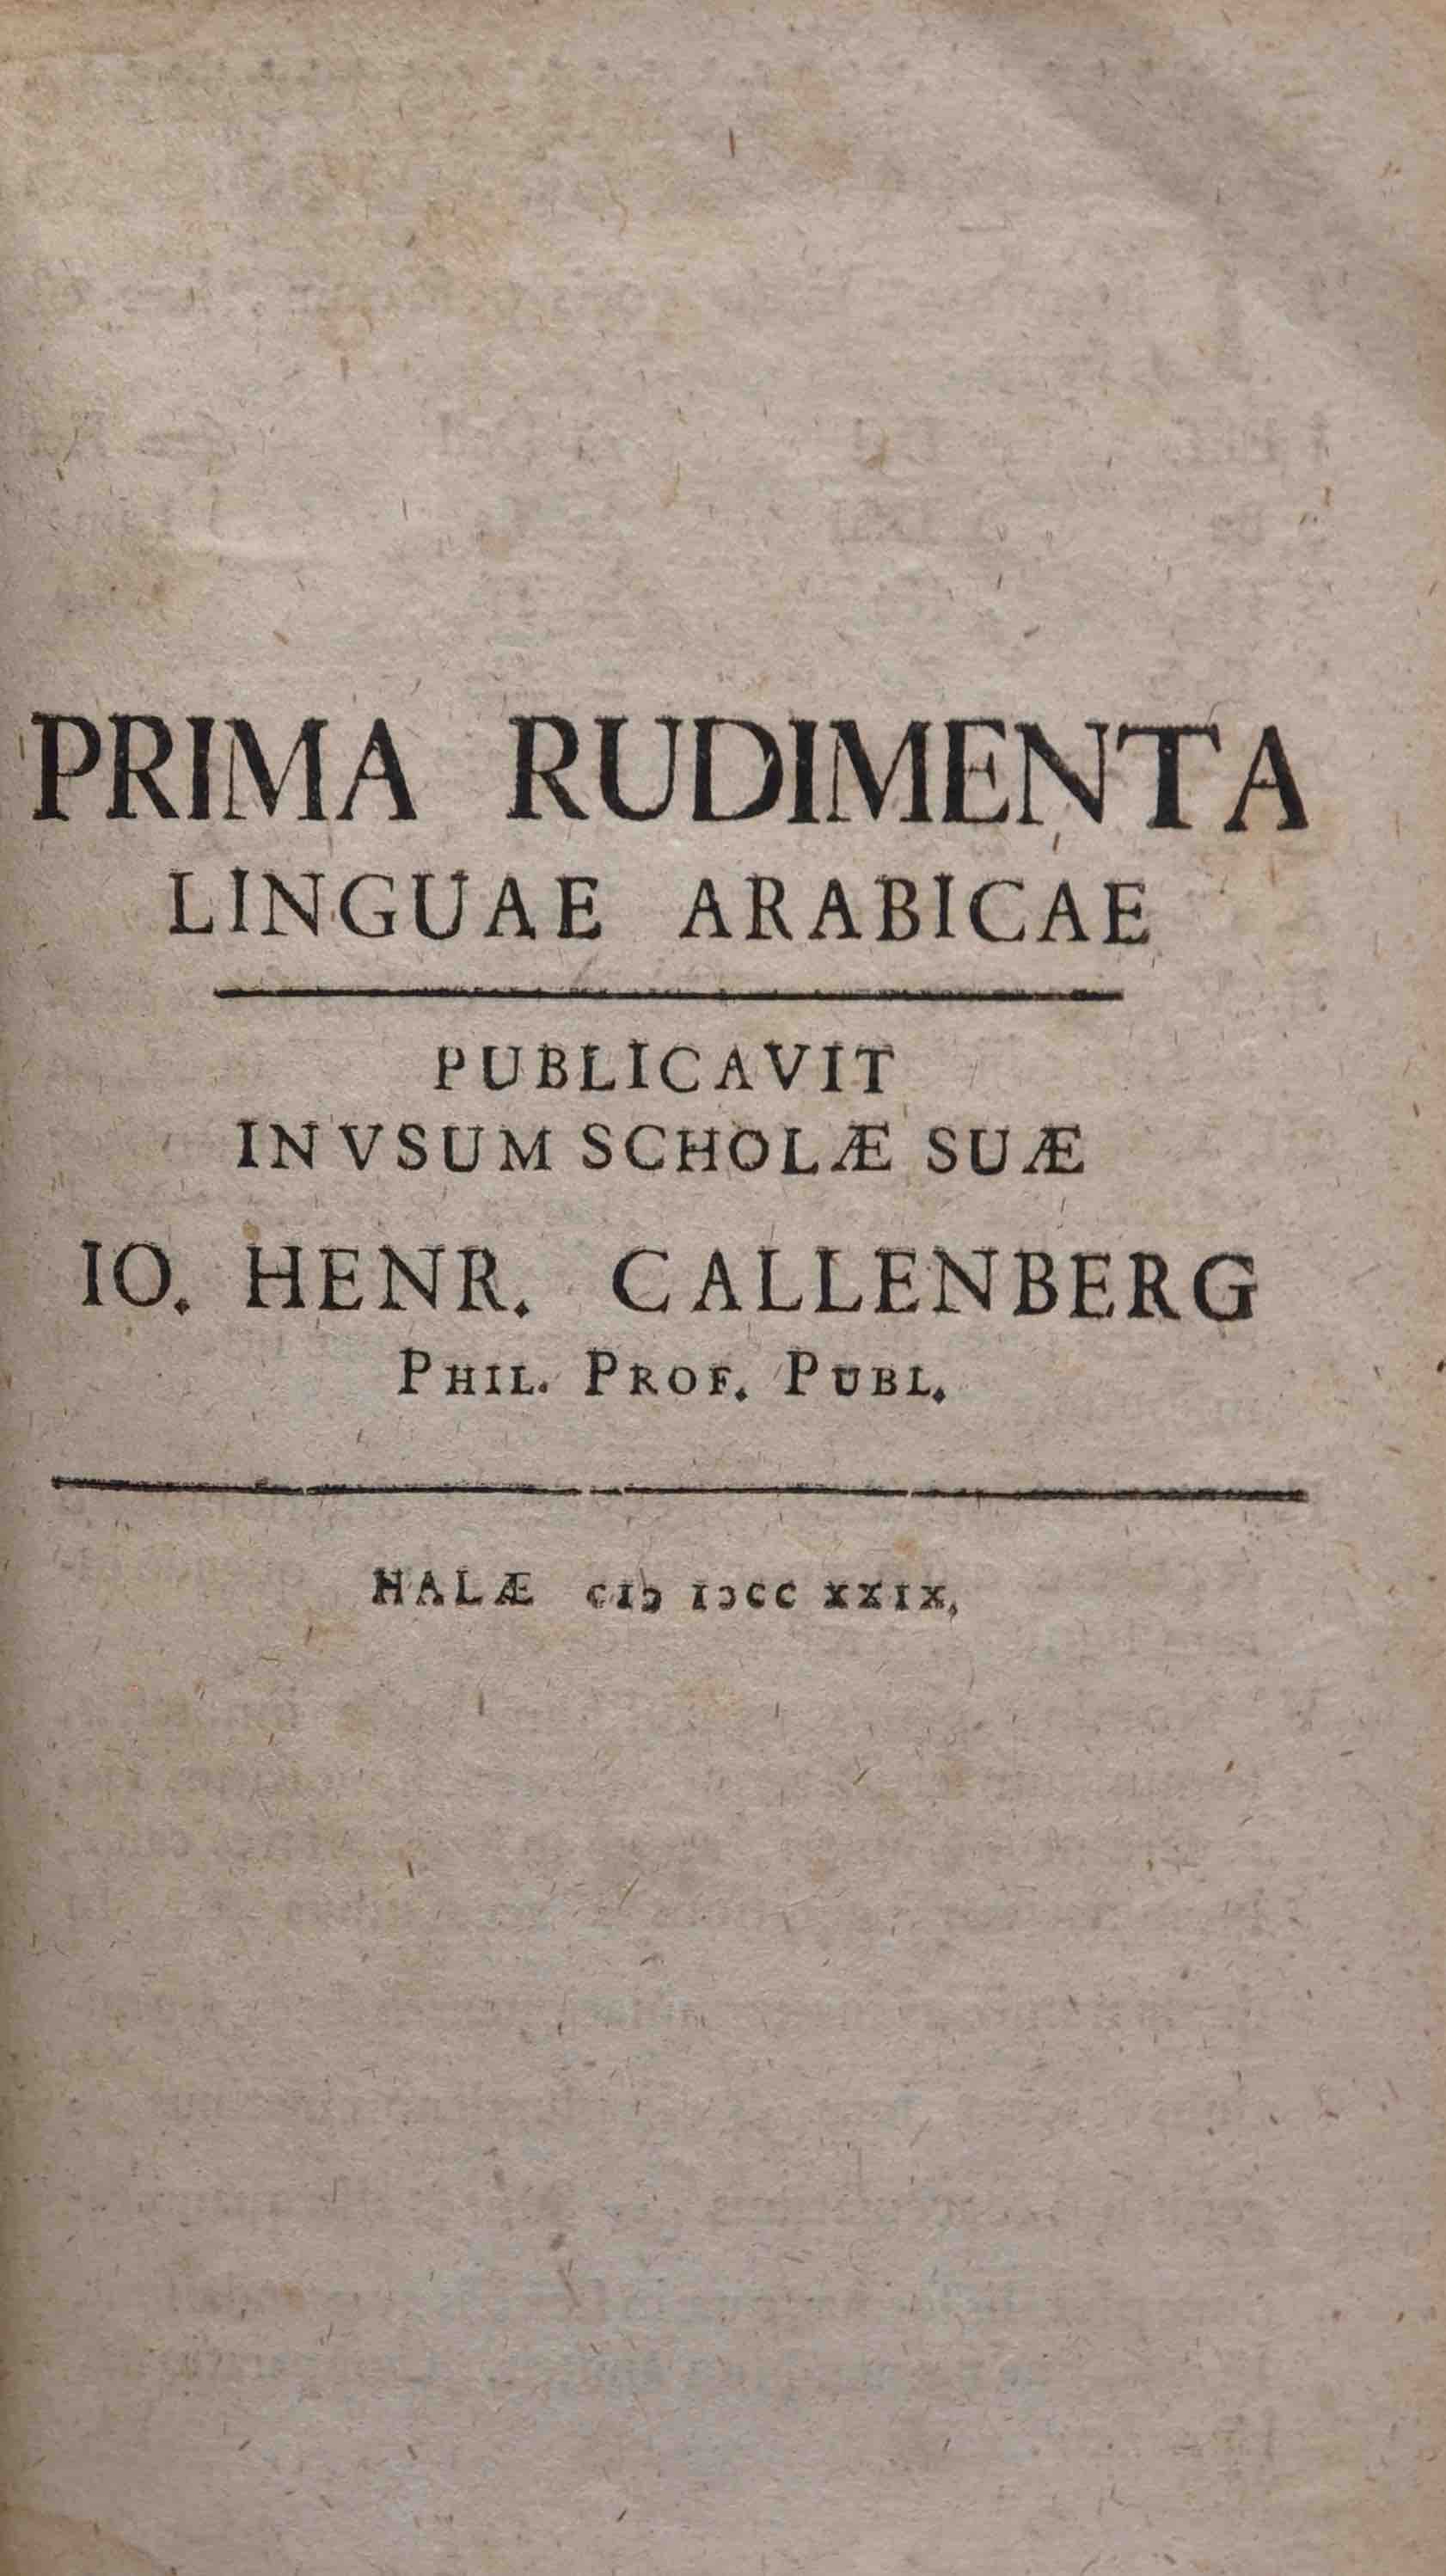 CALLENBERG, JOHANN HEINRICH: - Prima rudimenta linguae arabicae. In usum scholae suae. Halle 1729.